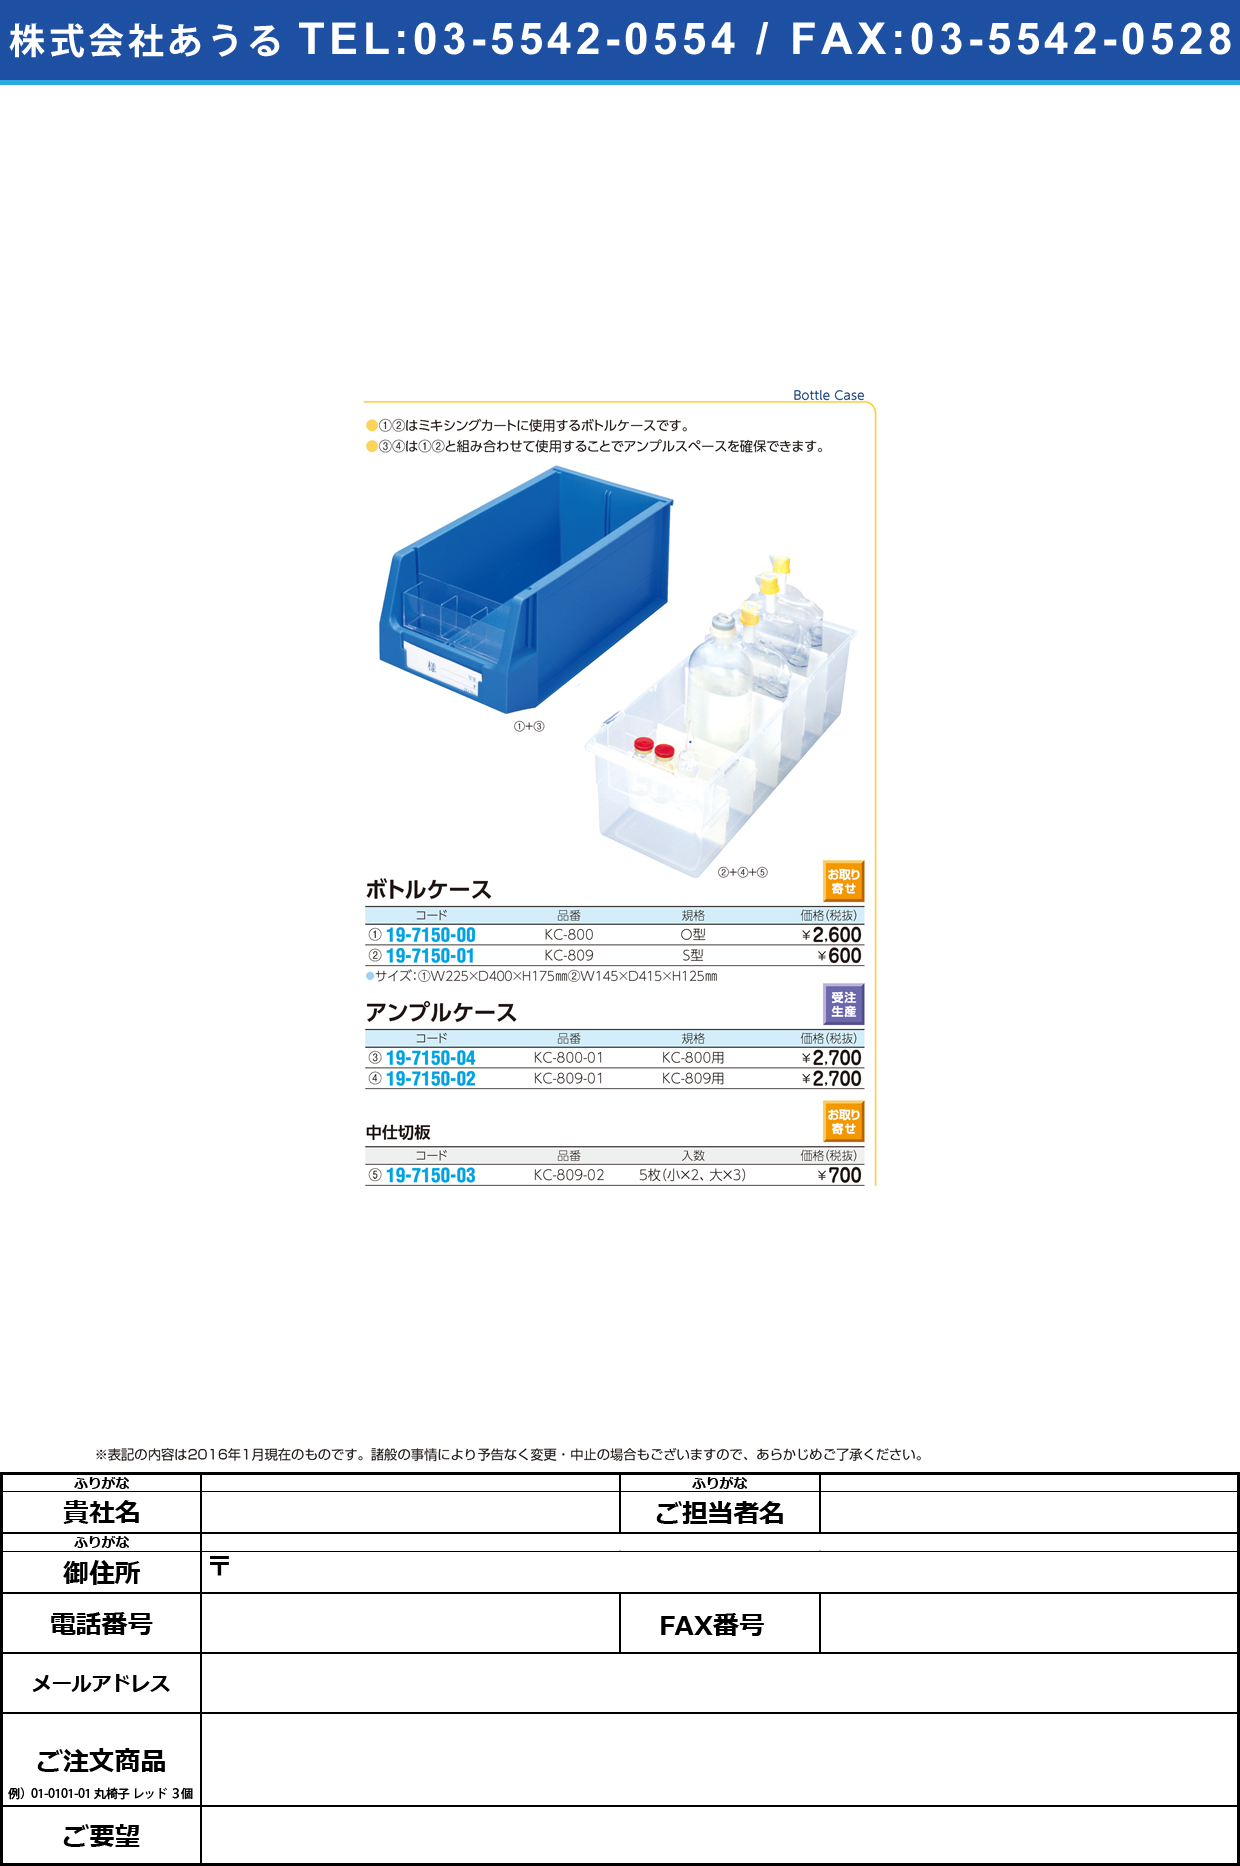 (19-7150-00)ボトルケース Ｏ型 ﾎﾞﾄﾙｹｰｽ Oｶﾞﾀ KC-800【1個単位】【2016年カタログ商品】